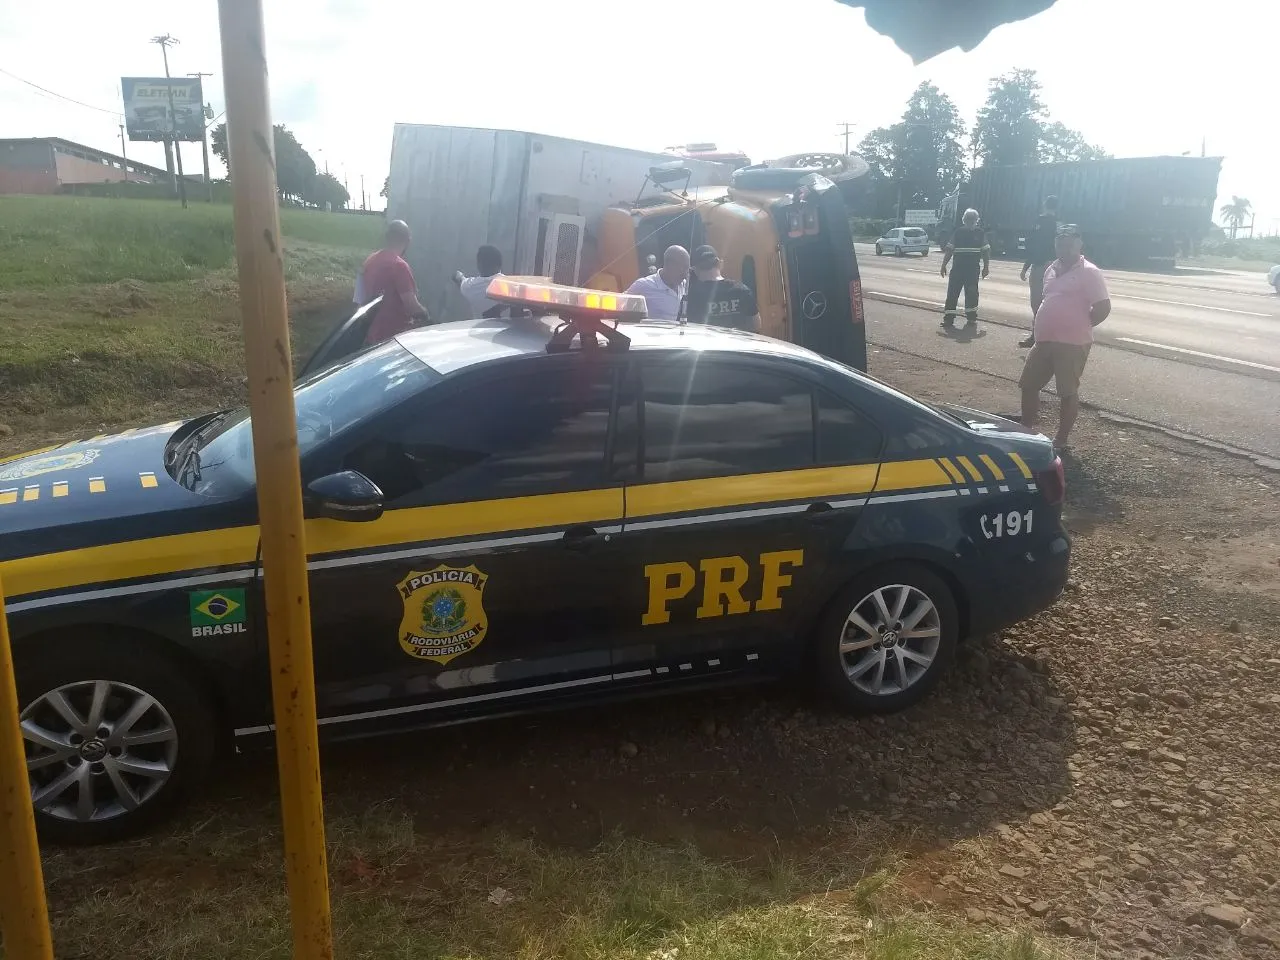 Caminhão tomba após colidir com outro veículo em Apucarana